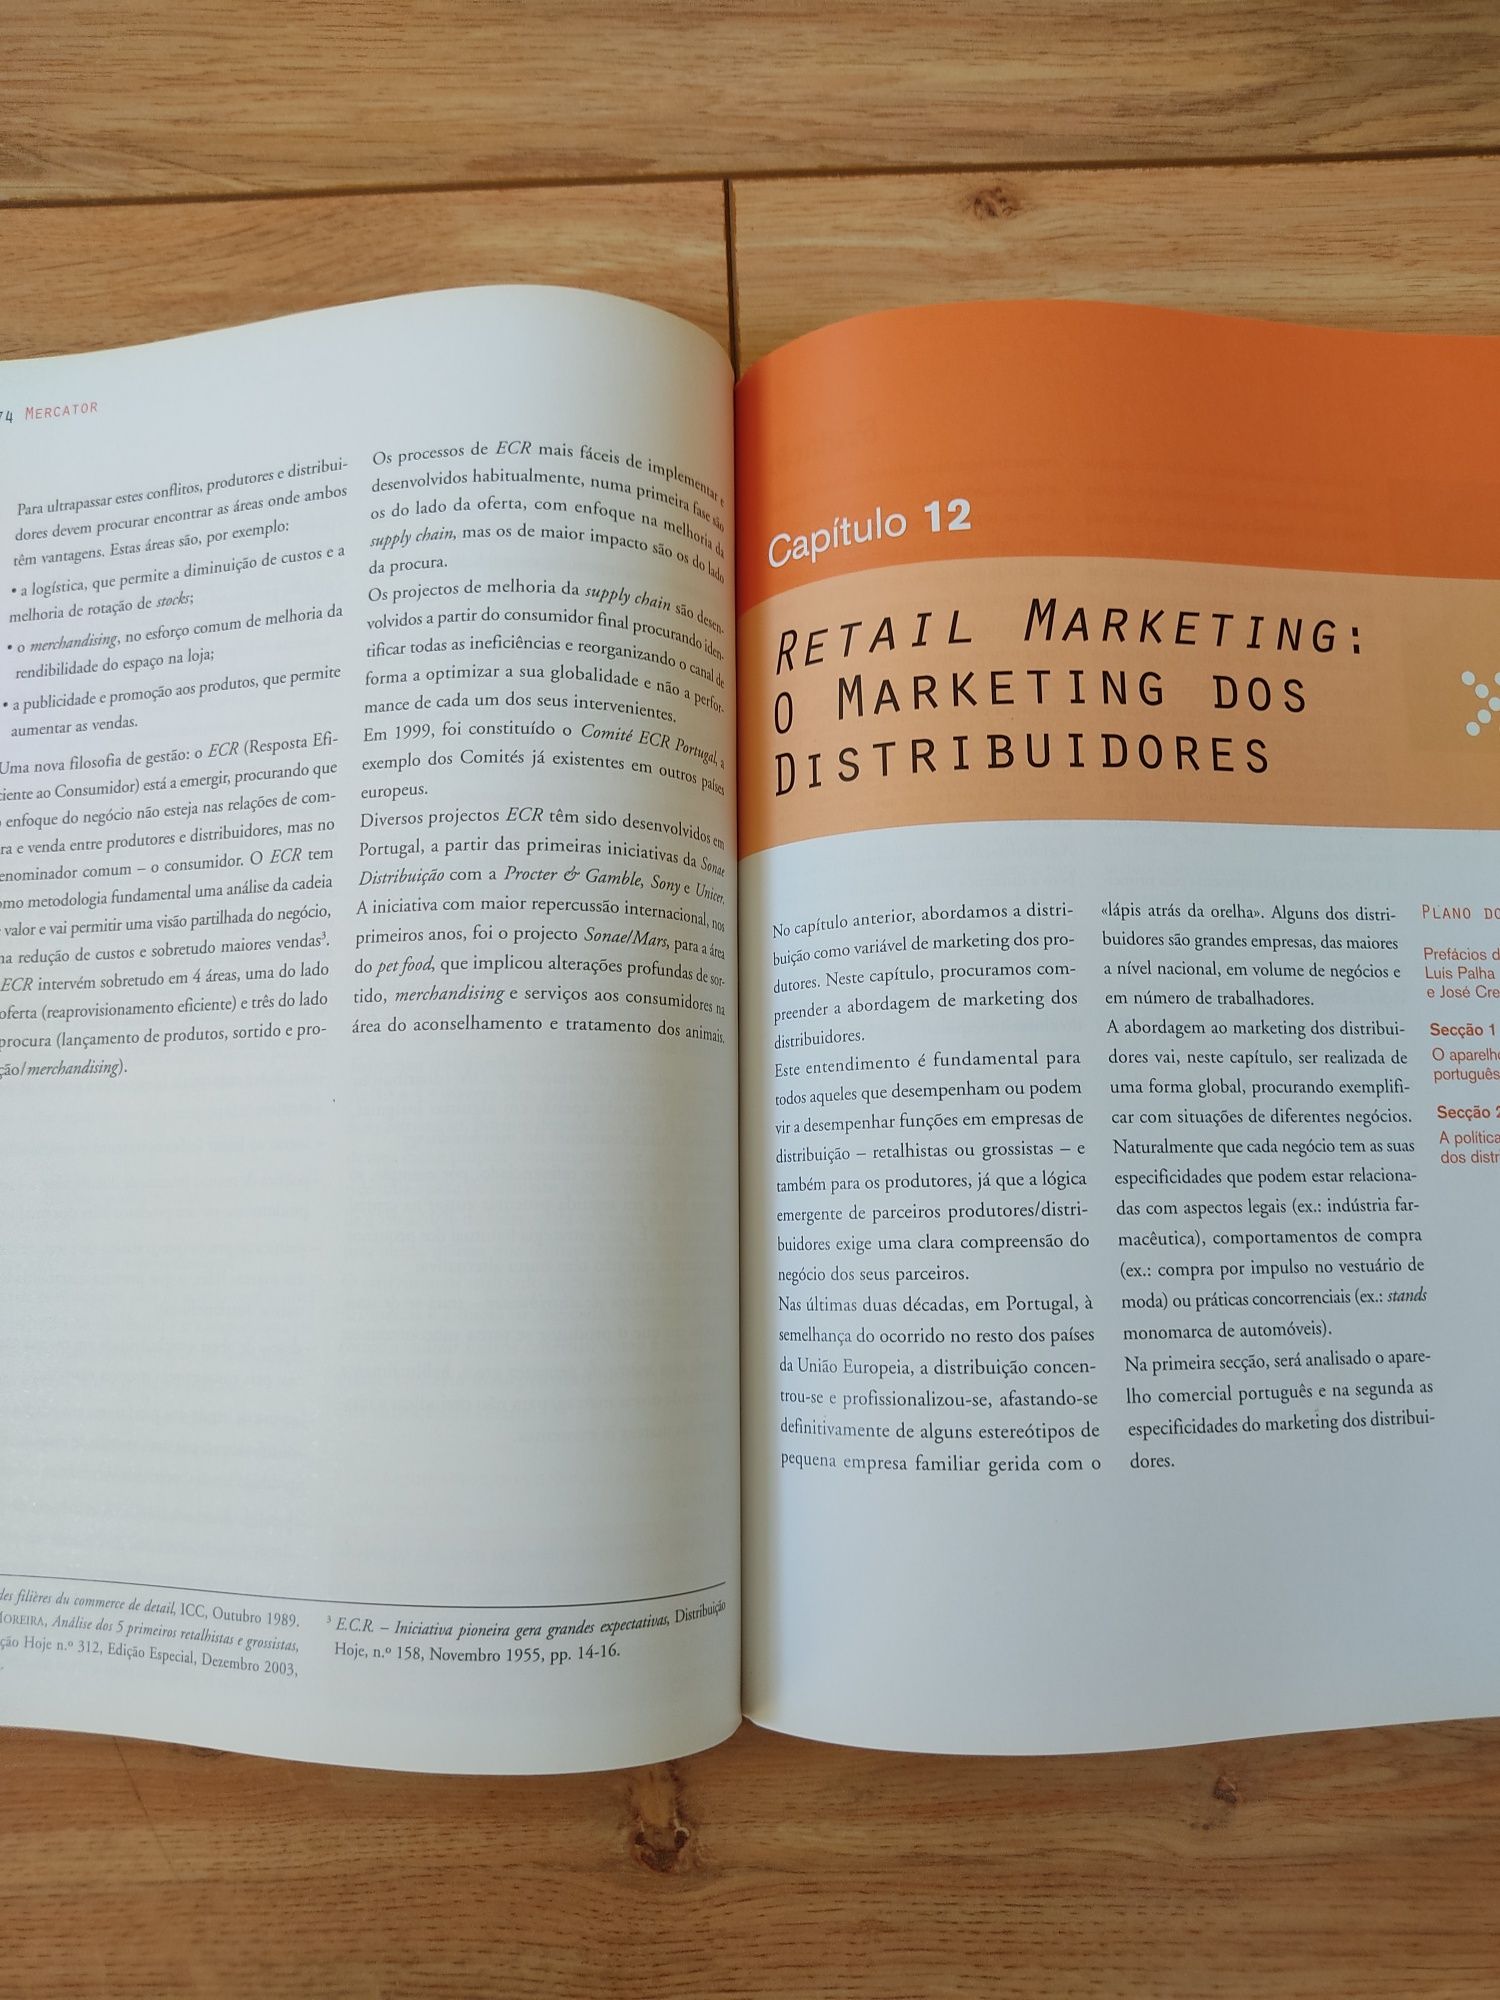 Livro "Mercator XXI teoria e prática do marketing"